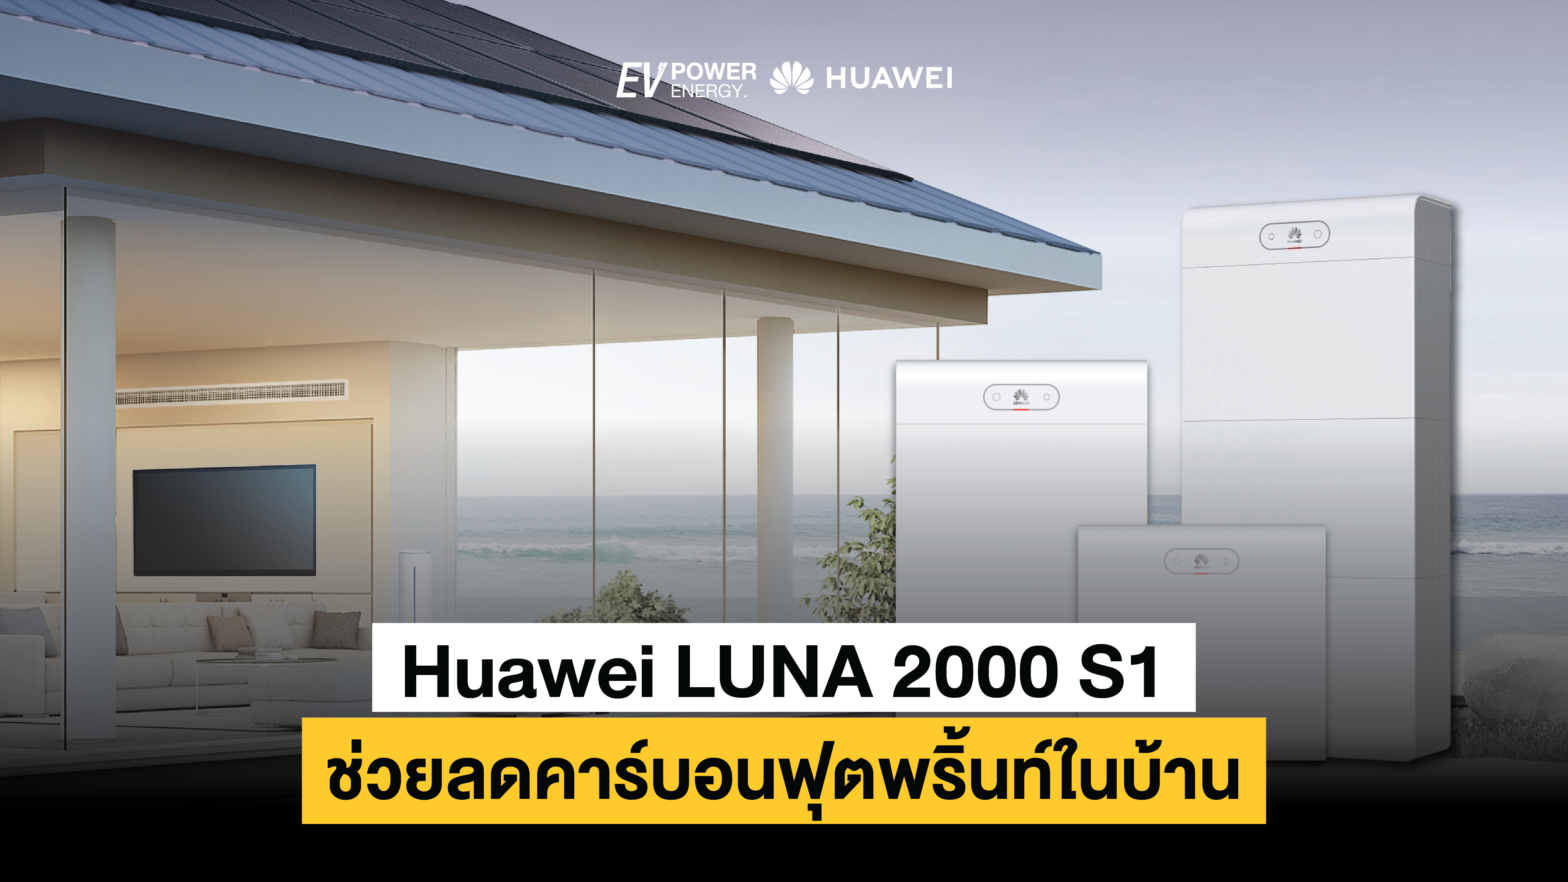 Huawei LUNA 2000 S1 ช่วยลดคาร์บอนฟุตพริ้นท์ในบ้าน